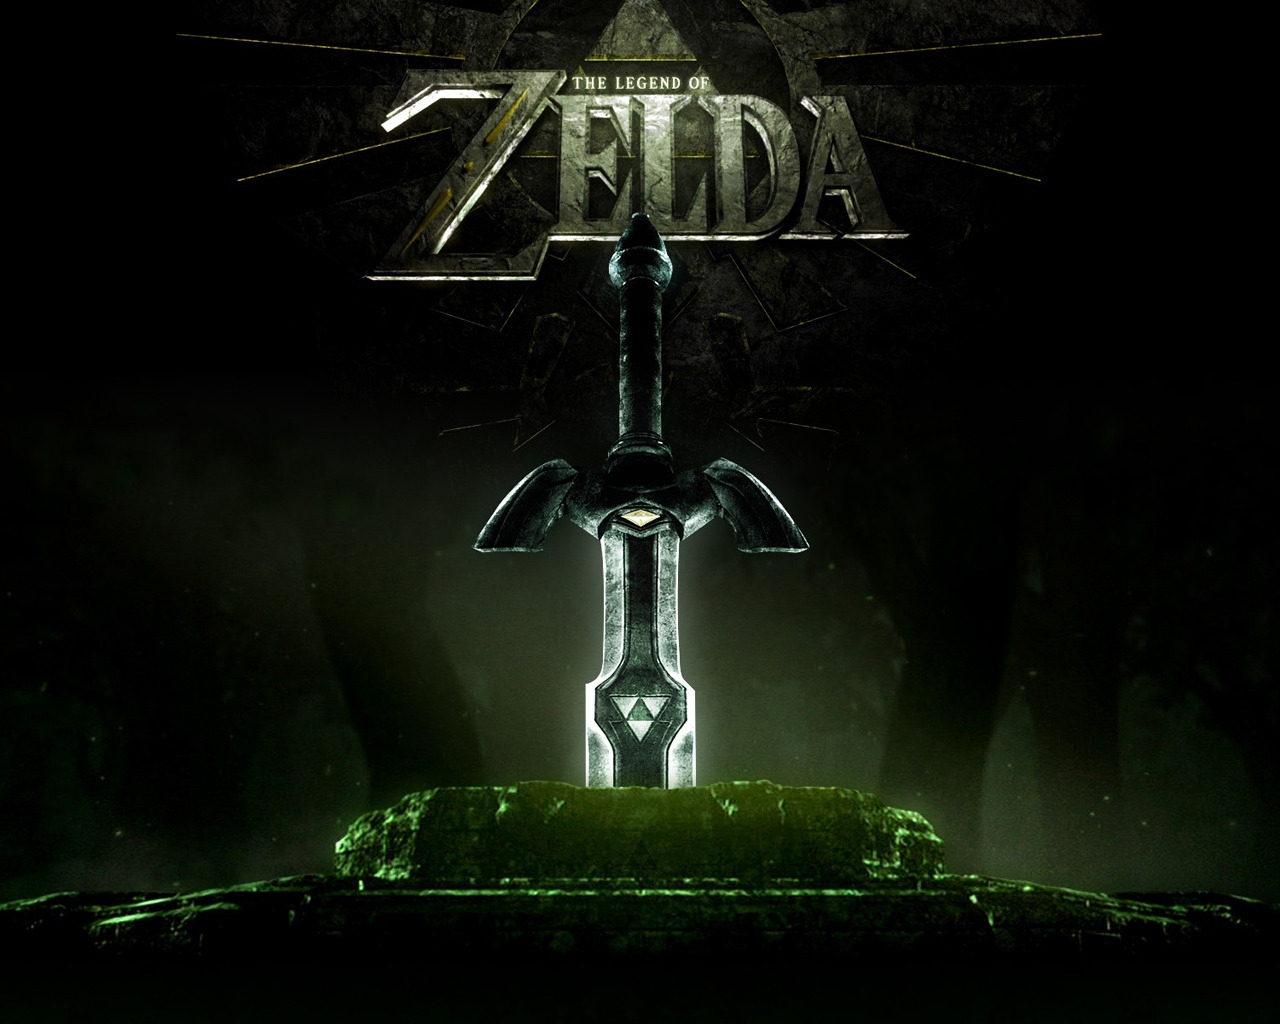 Legend of Zelda for 1280 x 1024 resolution